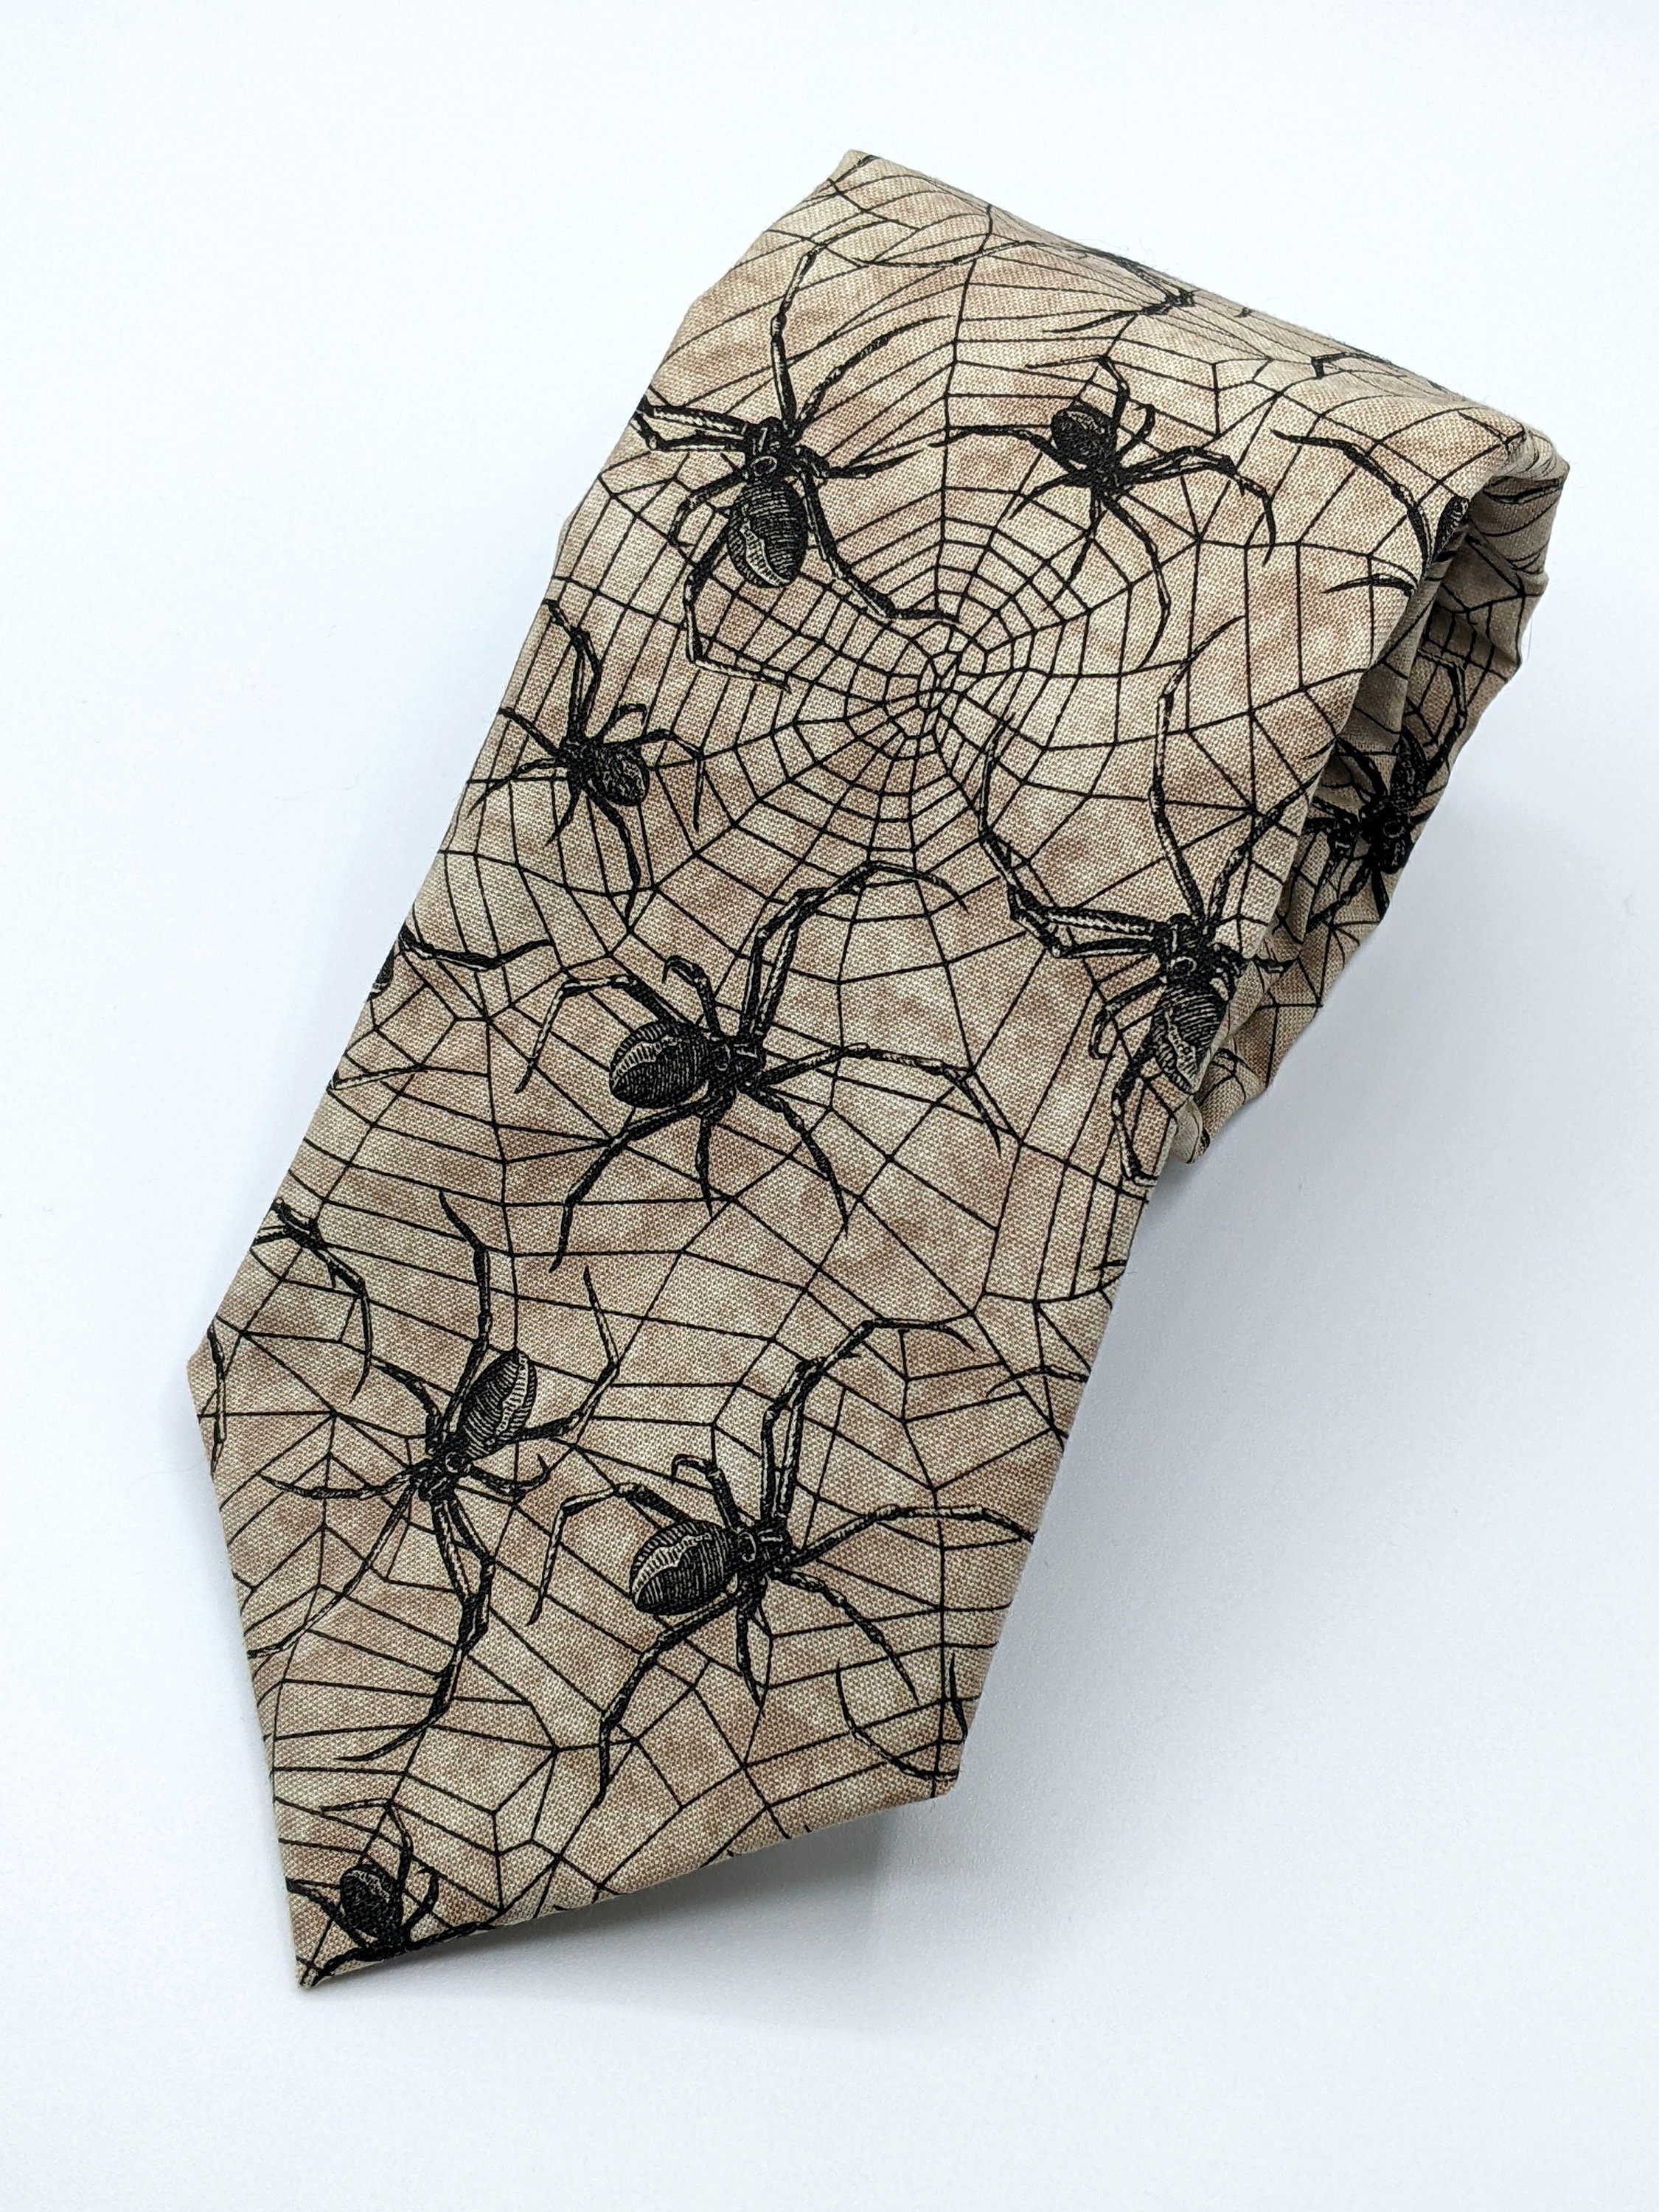 Black Spider Necktie – Spider Web Tie